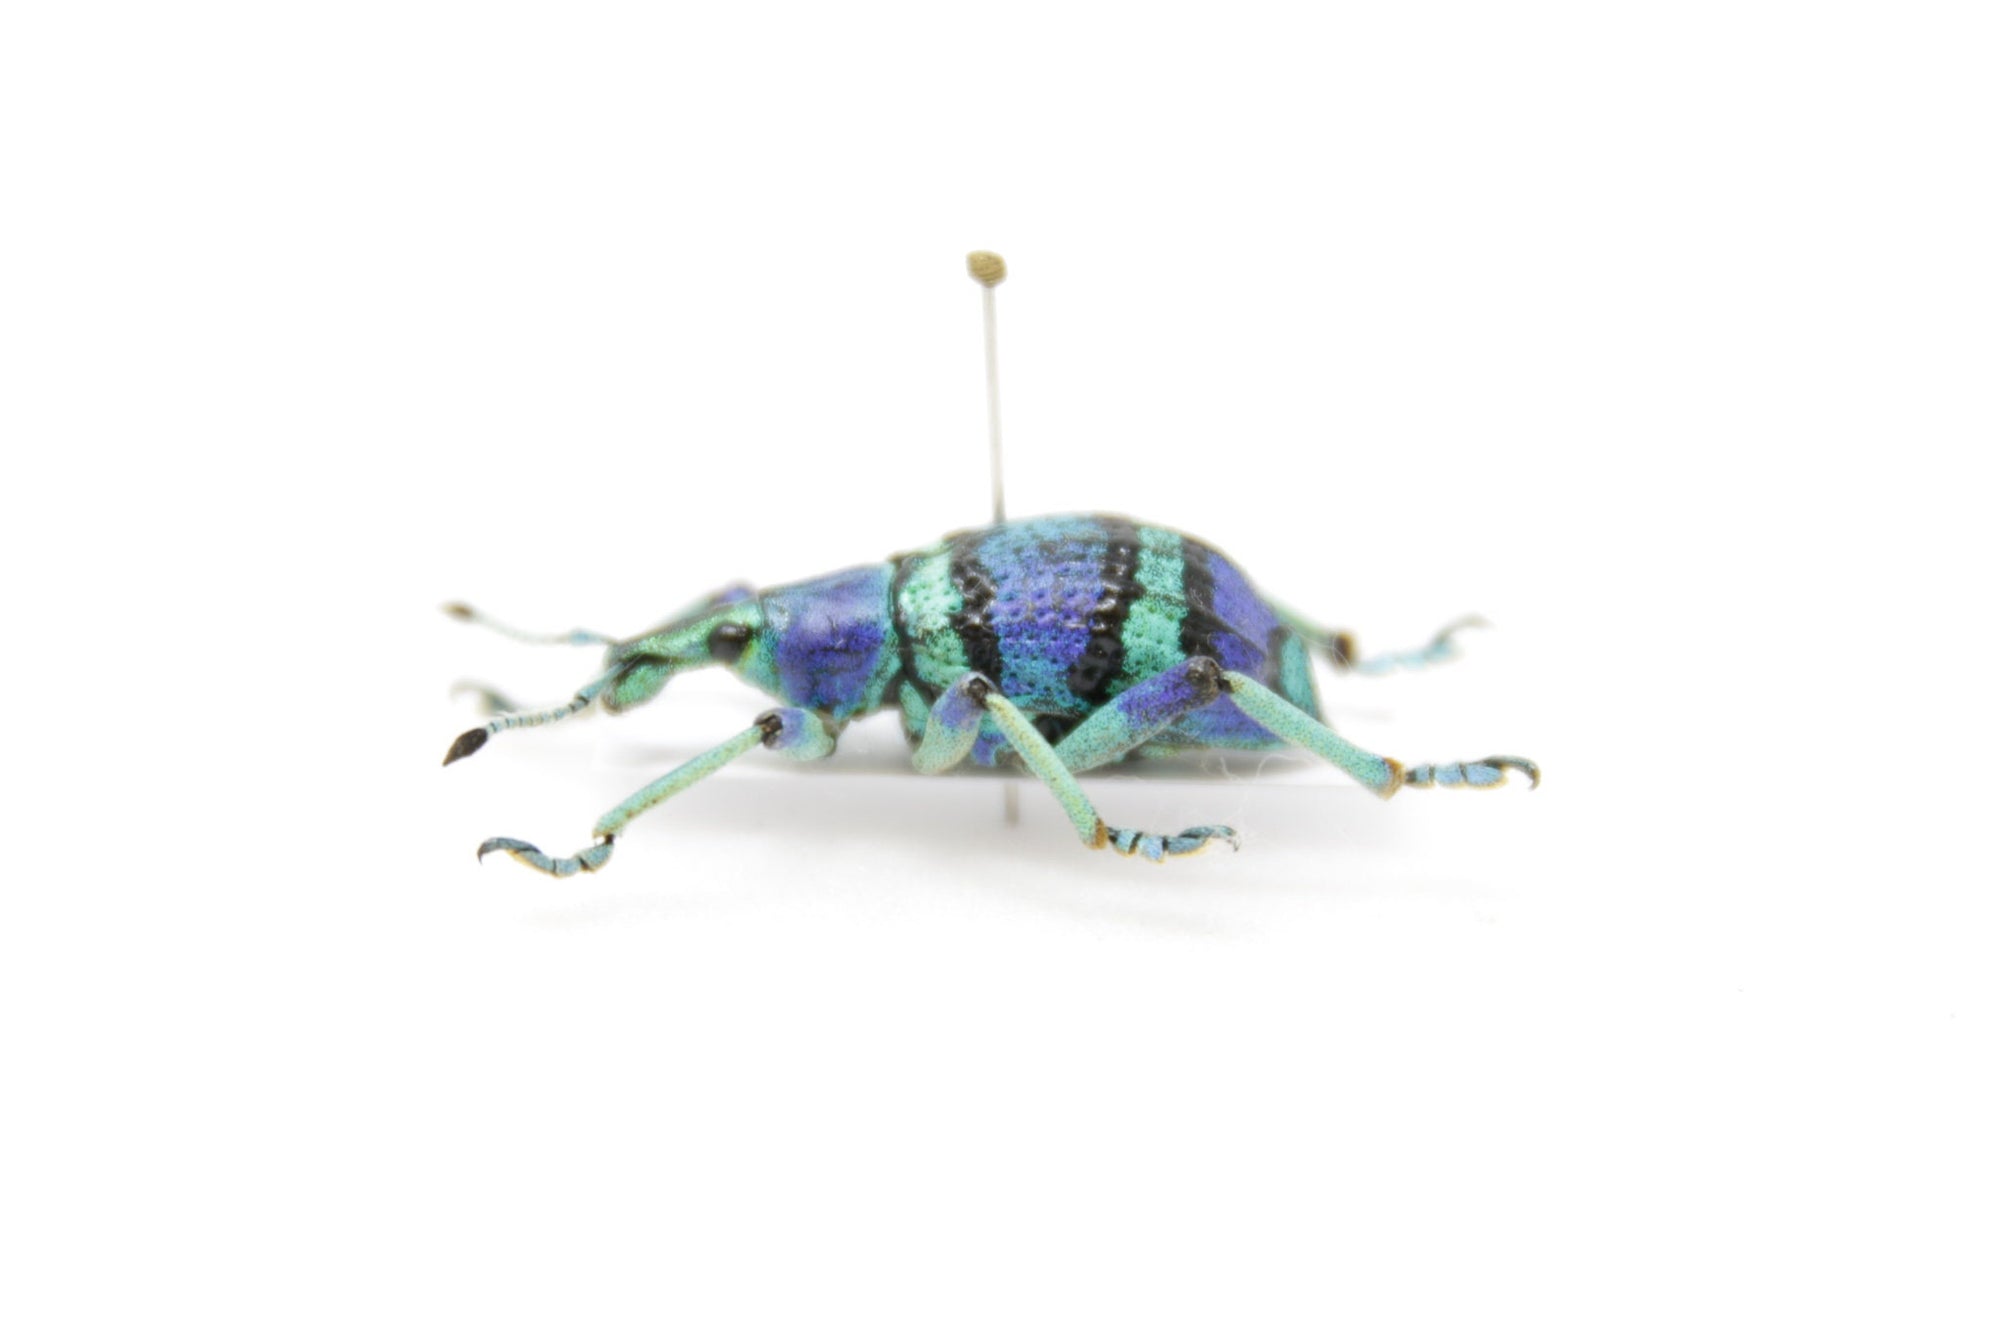 Eupholus schoenherri, Arfak Irian Java, A1 Real Beetle Pinned Set Specimen, Entomology Taxidermy #OC97